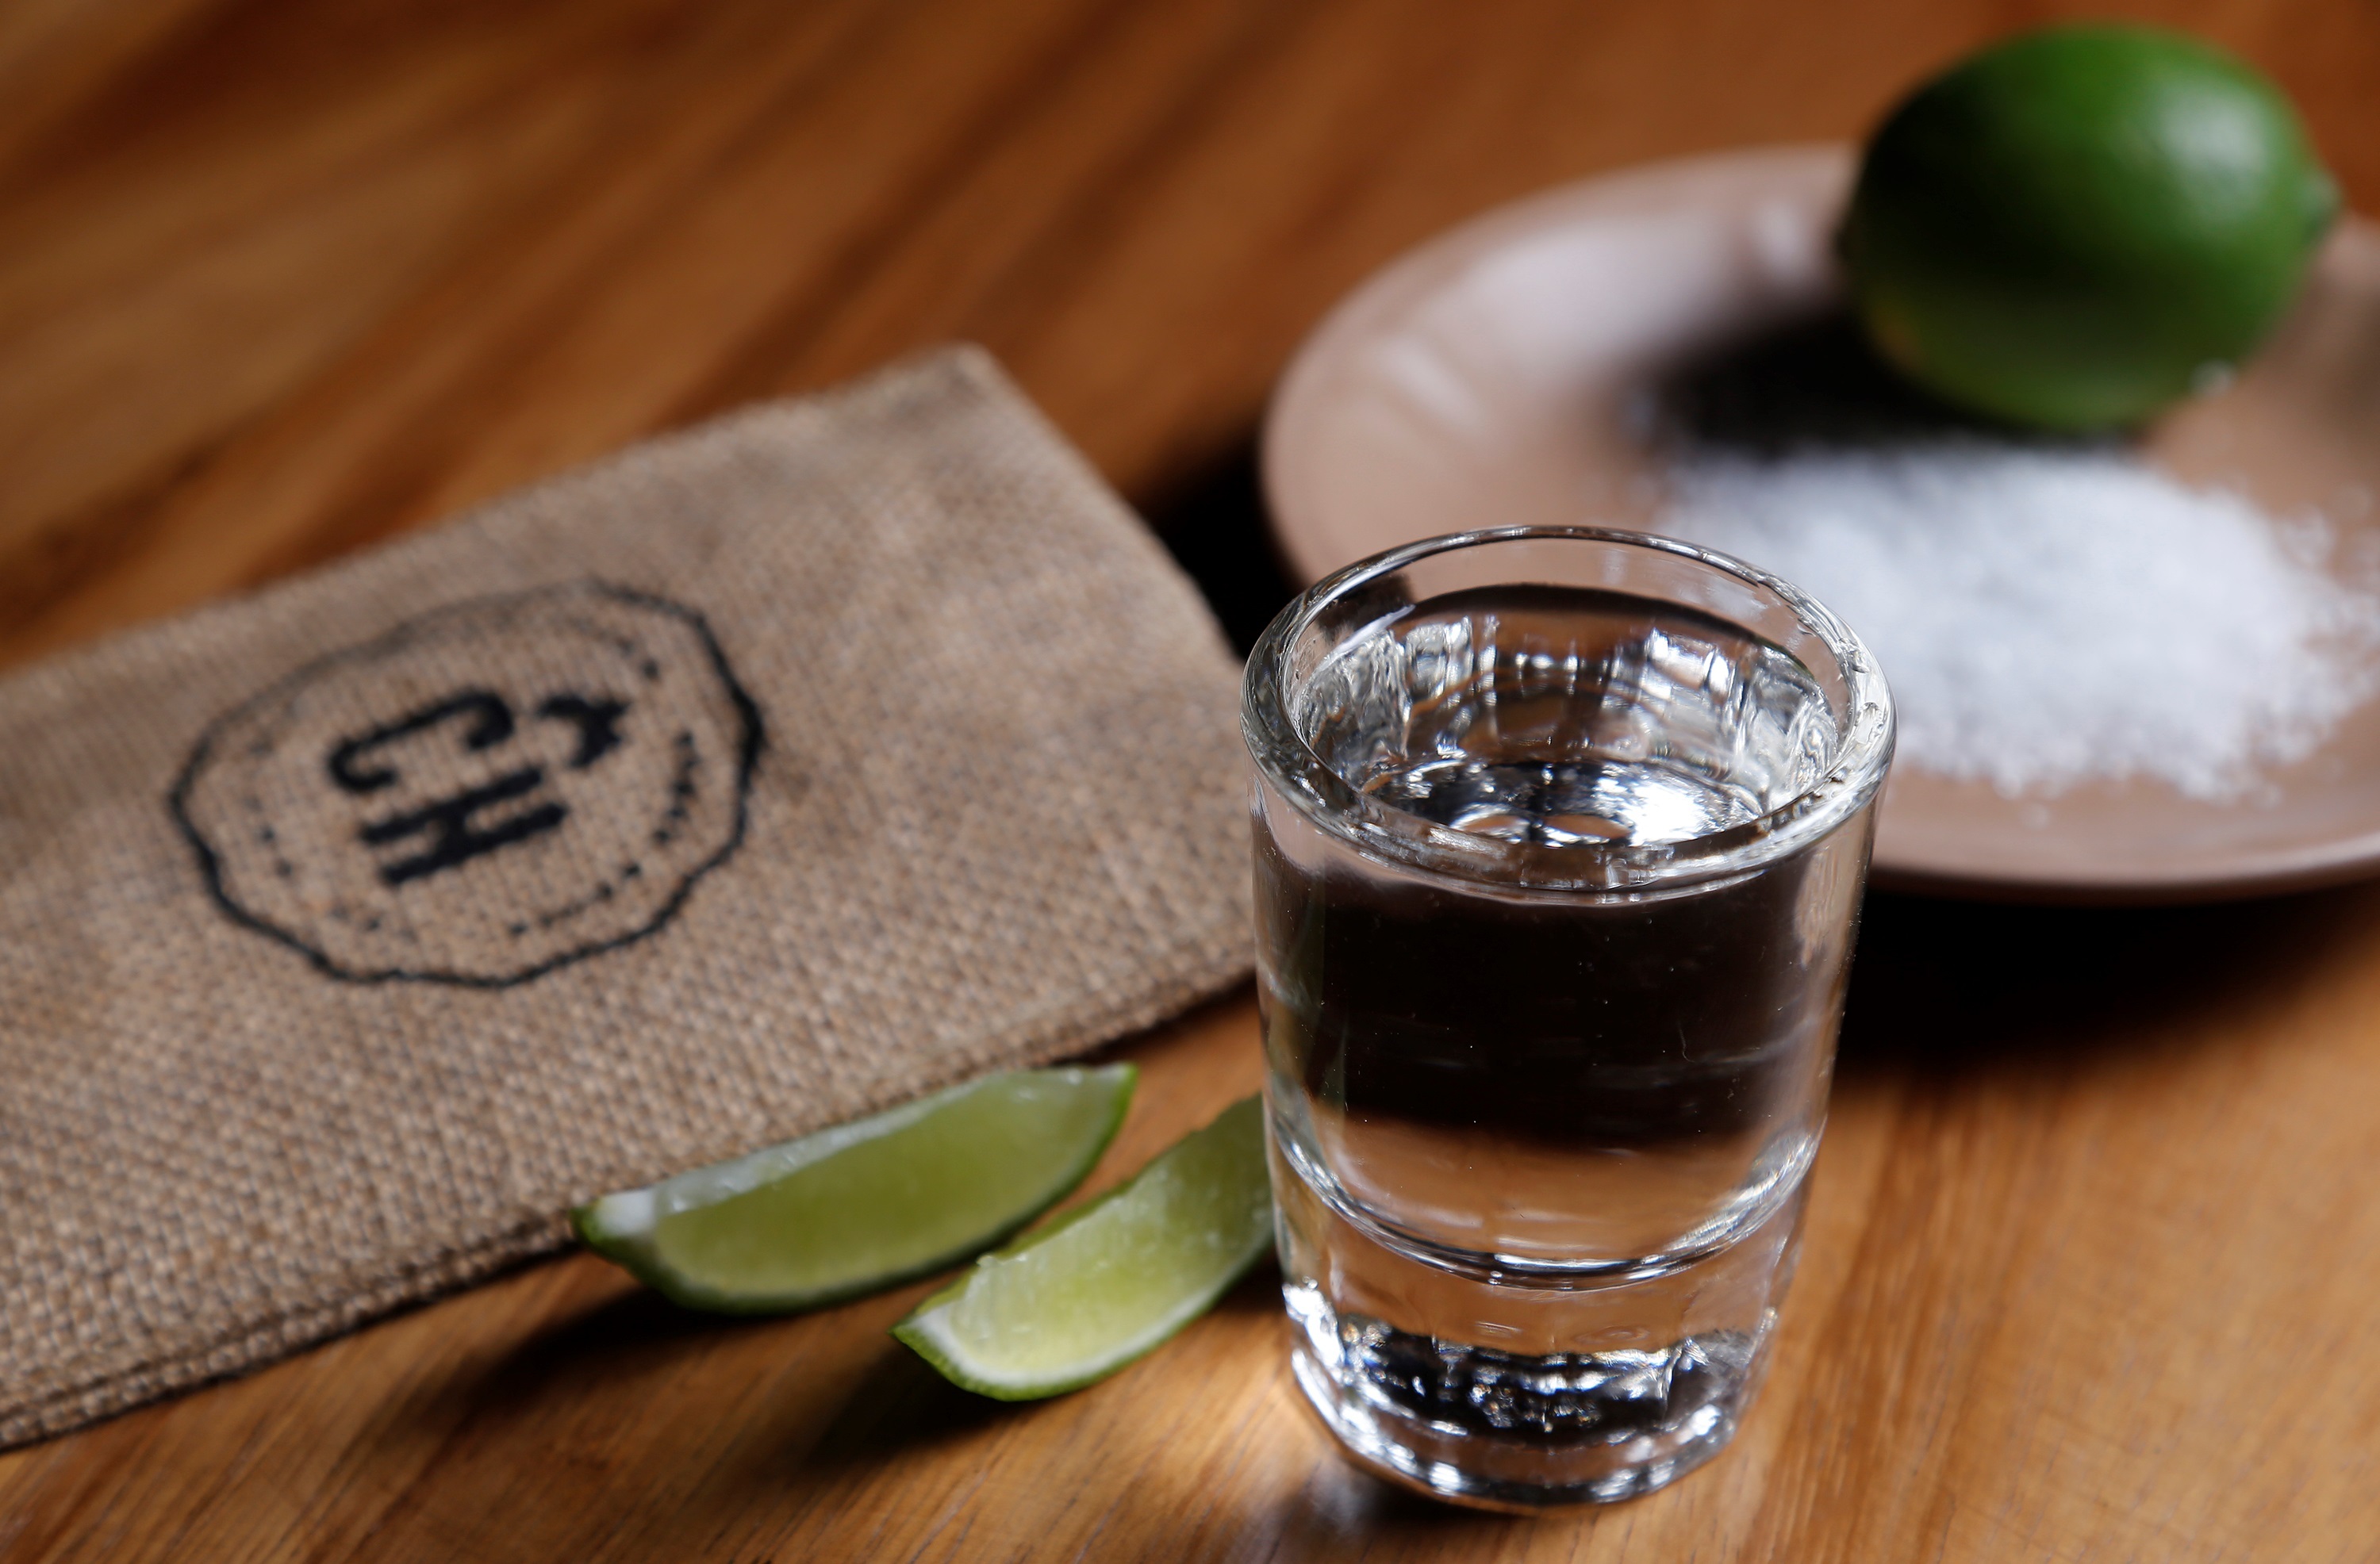 Descubrimiento Usual Distante Por qué en México se acostumbra a tomar tequila con sal y limón - Infobae